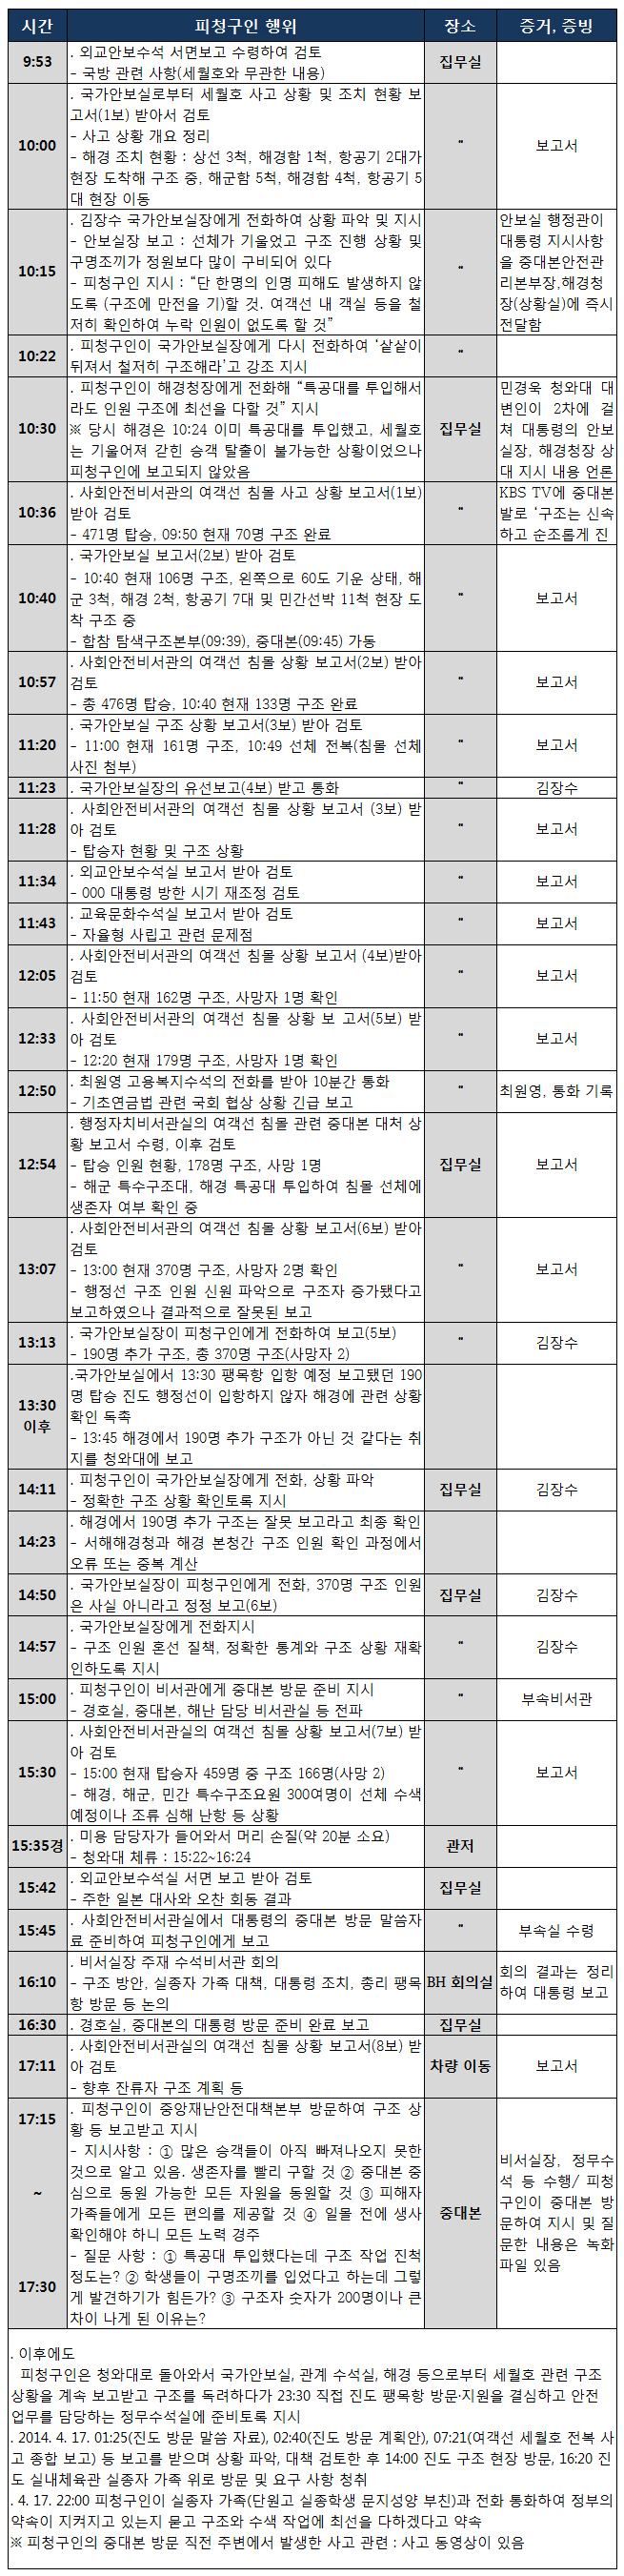 박근혜 대통령 측이 헌재에 제출한 `세월호 참사일 일정표`